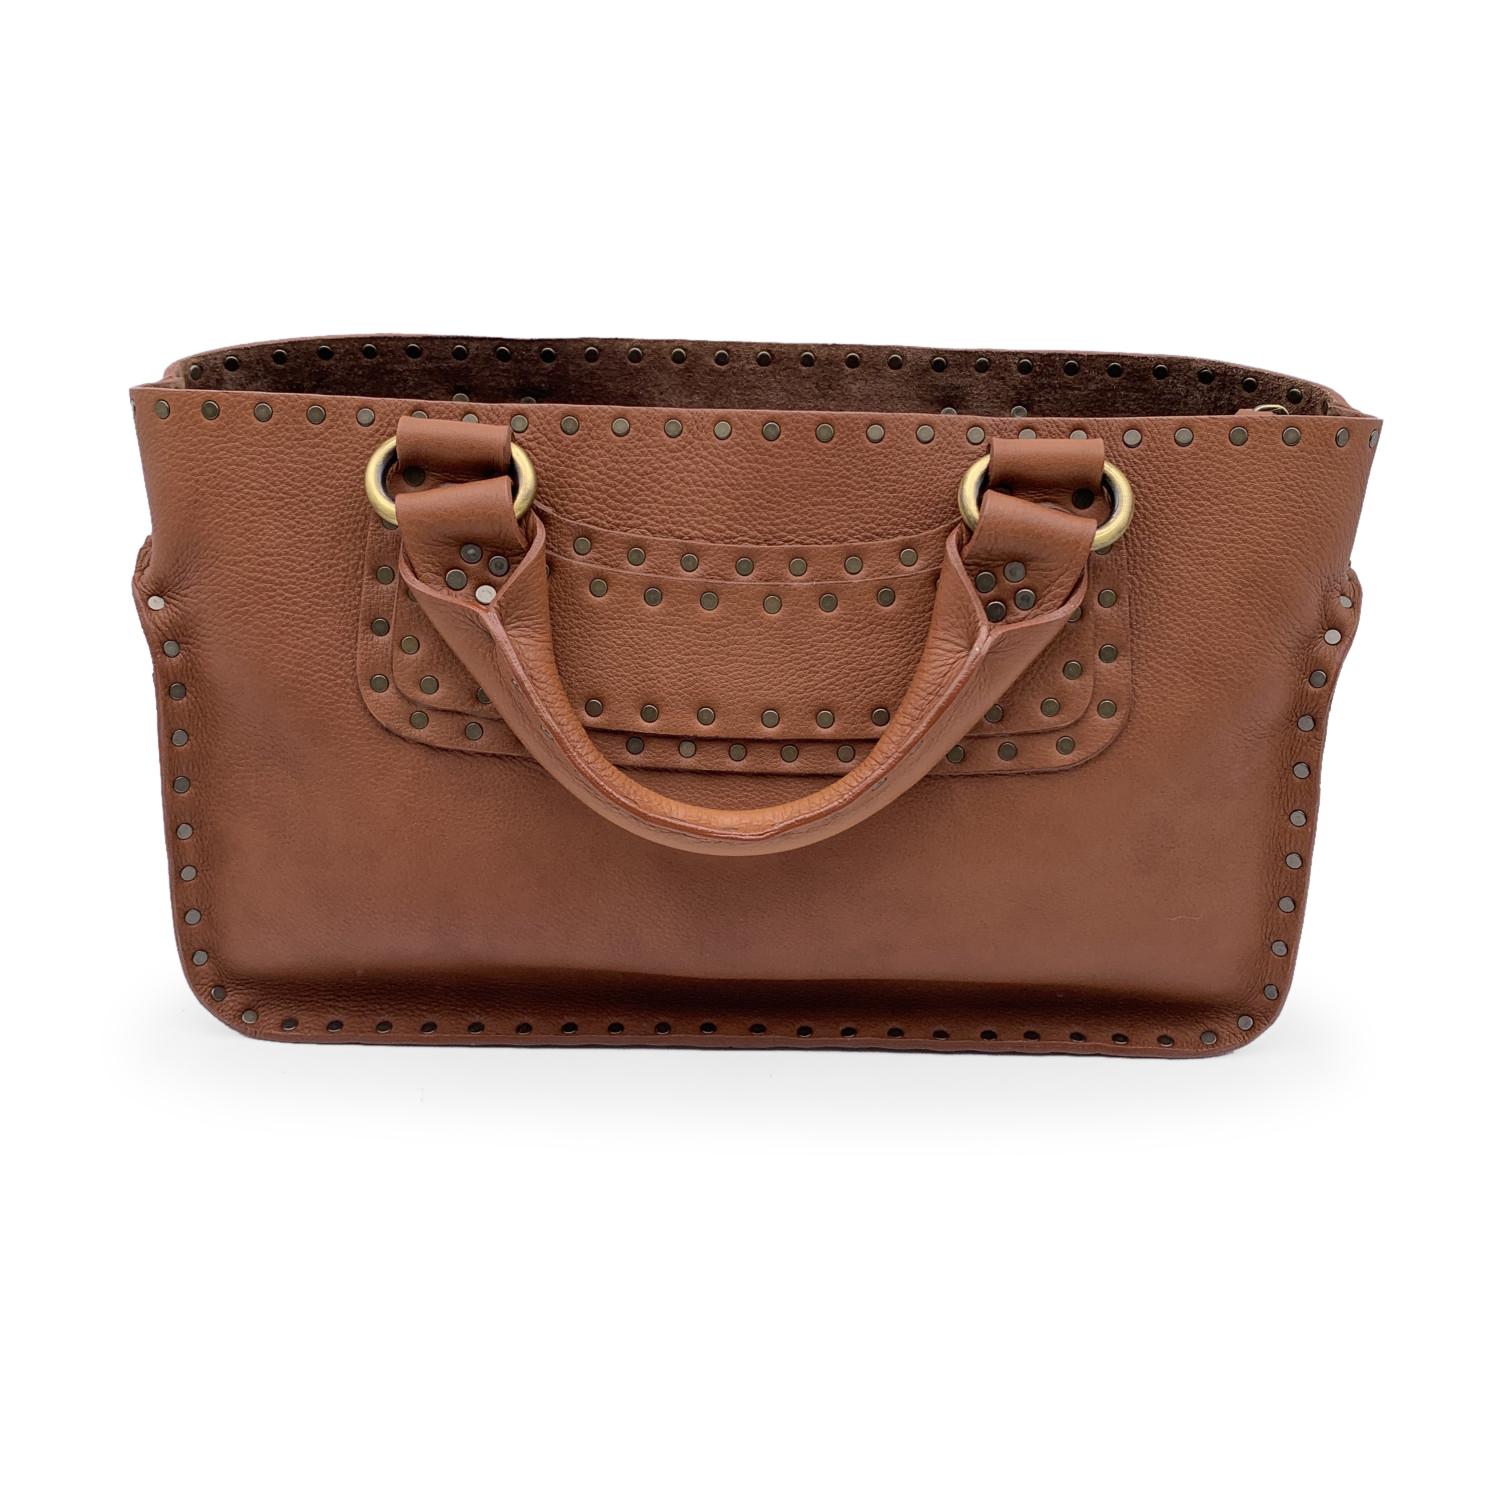 Celine Brown Leather Studded Boogie Bag Satchel Tote Handbag 1